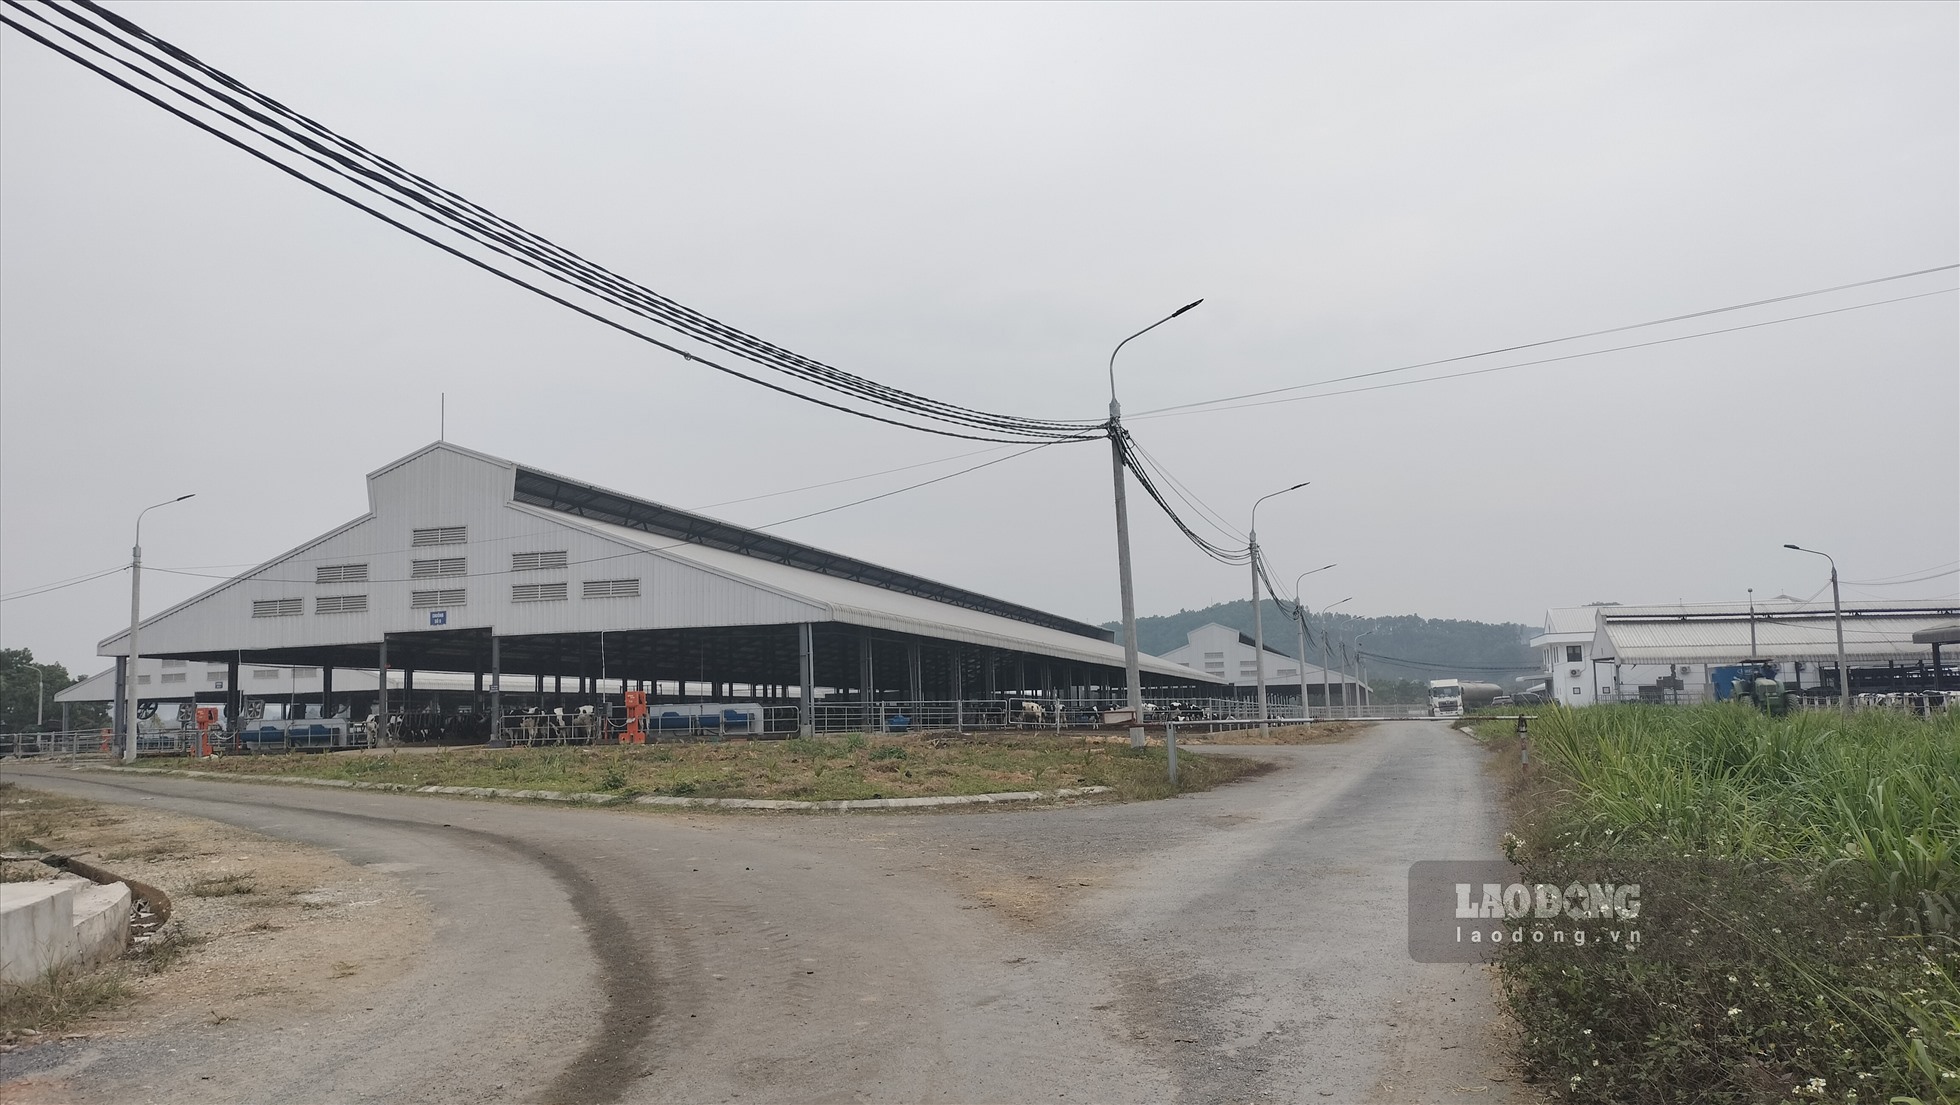 Được biết, trang trại bò sữa này là của Công ty Cổ phần Hồ Toản, được xây dựng tại thôn 14, xã Mỹ Bằng, huyện Yên Sơn từ năm 2016, đi vào hoạt động năm 2017, với tổng mức đầu tư ban đầu trên 125 tỉ đồng, do ông Lương Huy Toản làm Tổng Giám đốc.